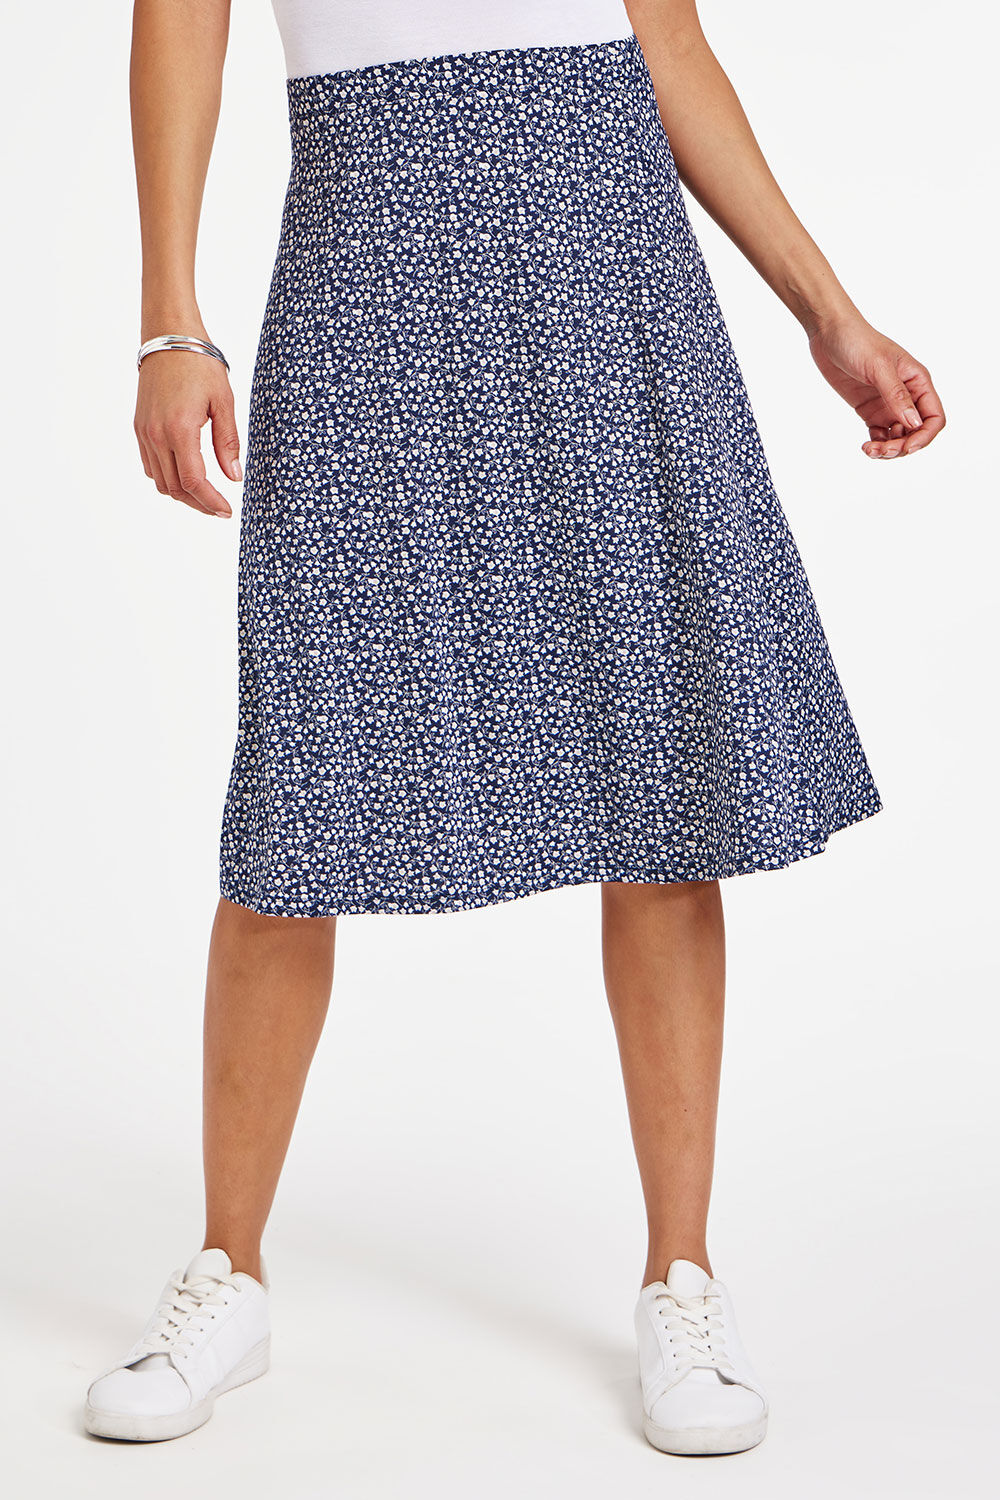 Bonmarche Navy Ditsy Print Flippy Skirt, Size: 26